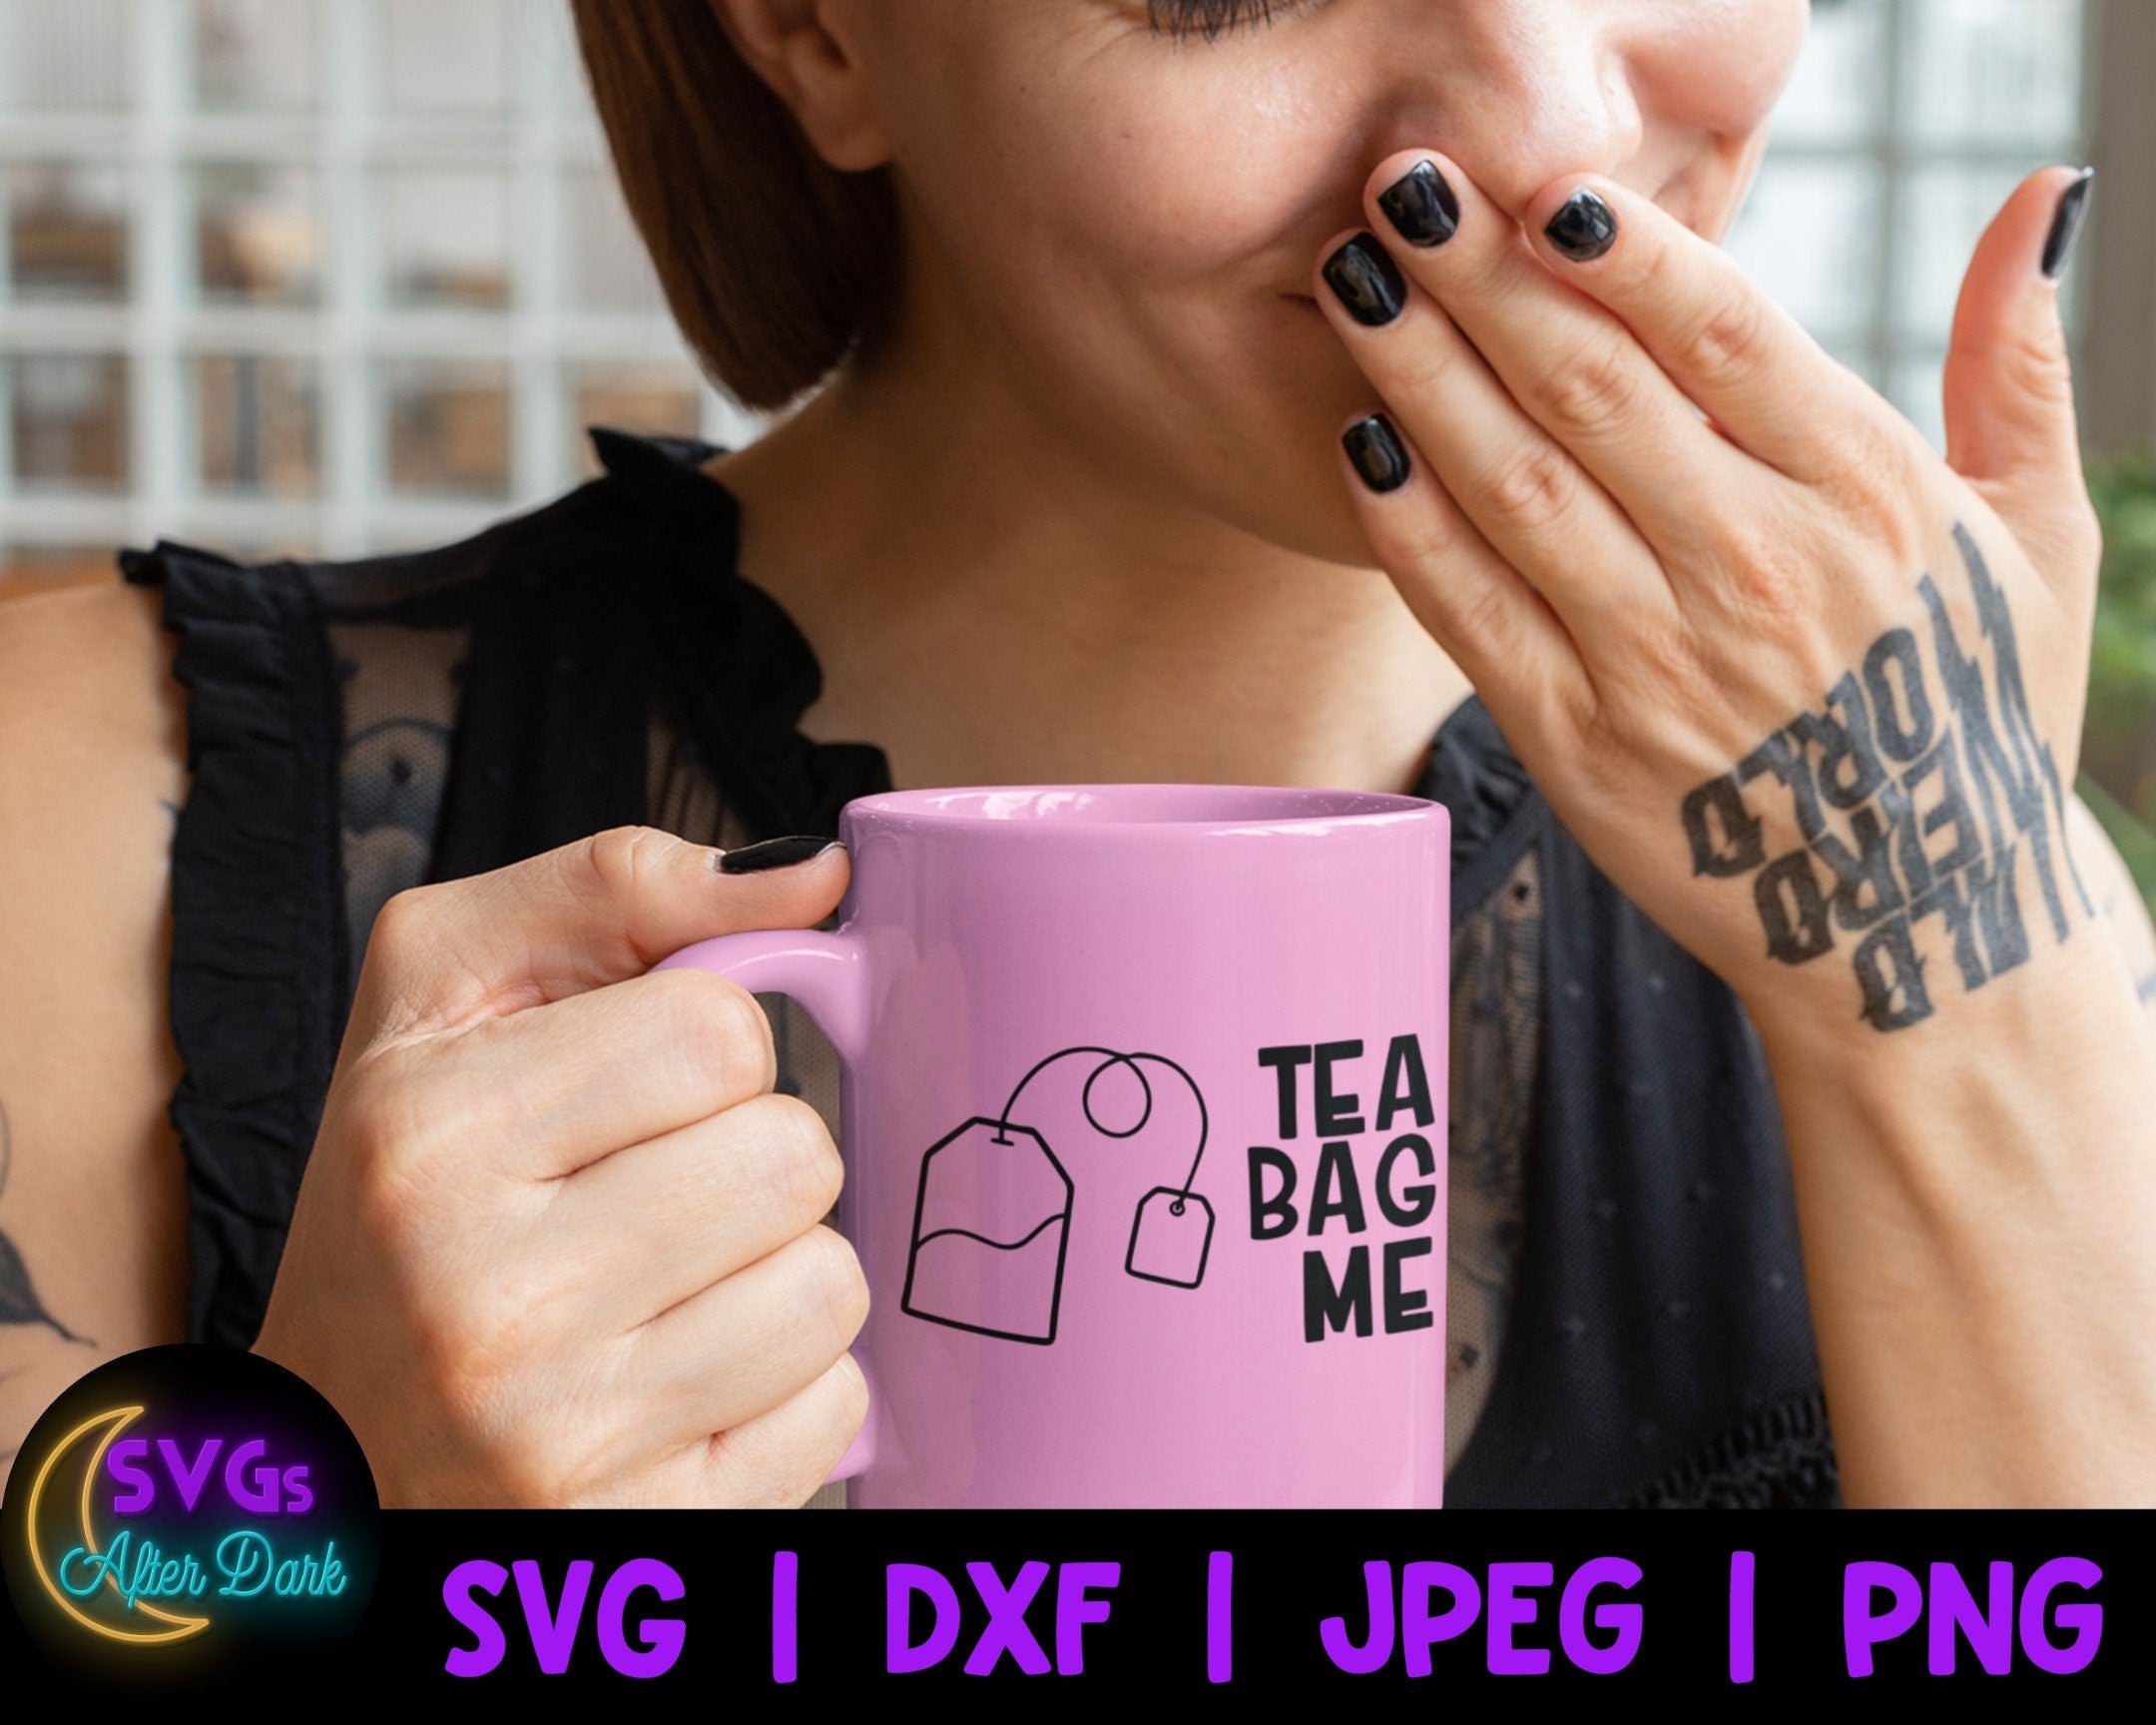 NSFW SVG - Tea Bag Me SVG - Funny Coffee Mug Svg